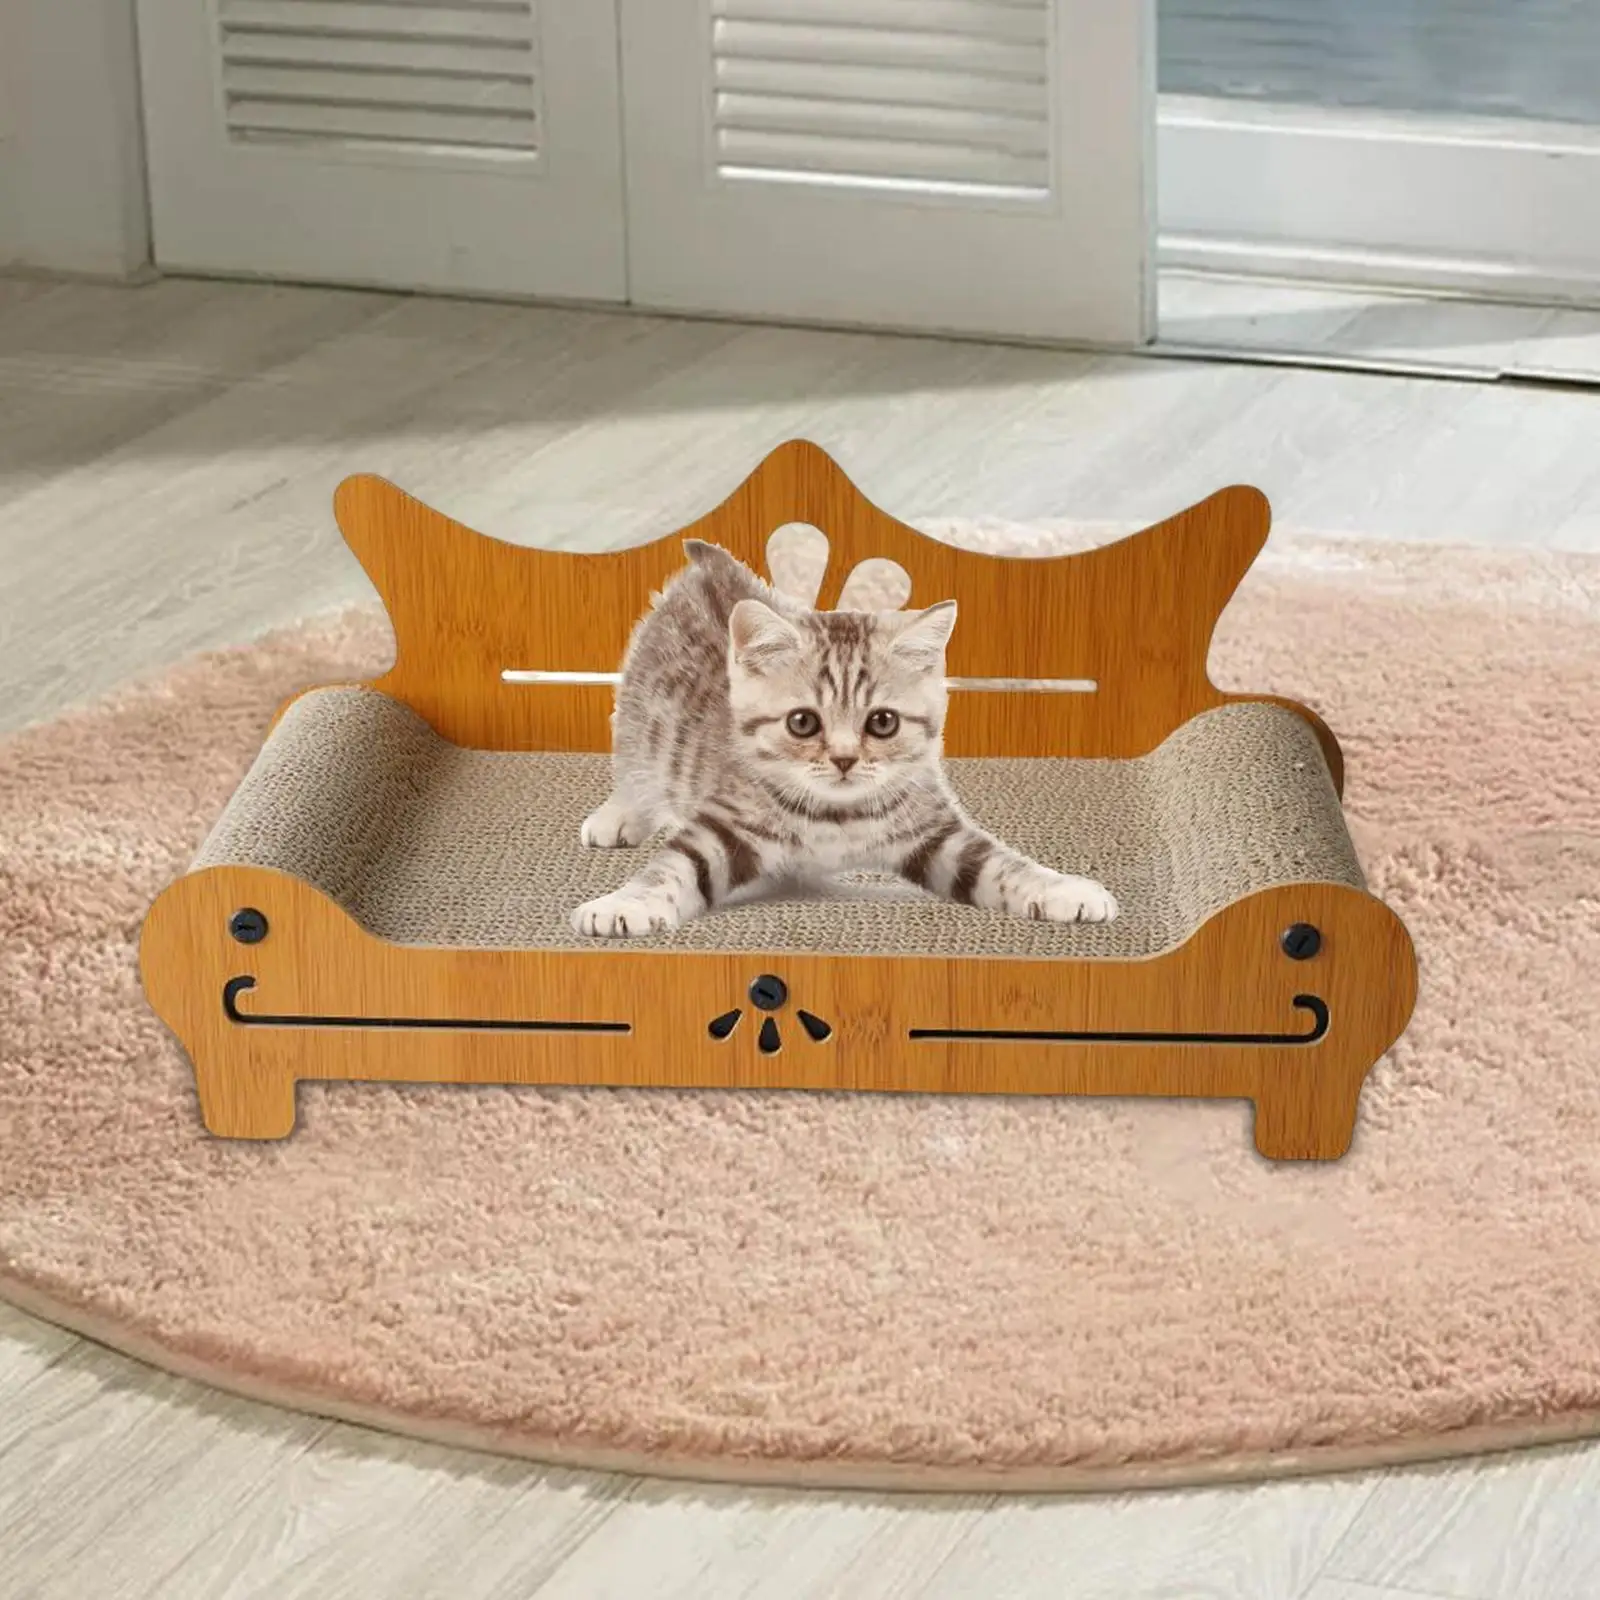 Cat Scratch Sofa Cat Scratcher Board Cat Furniture Protector for kitty